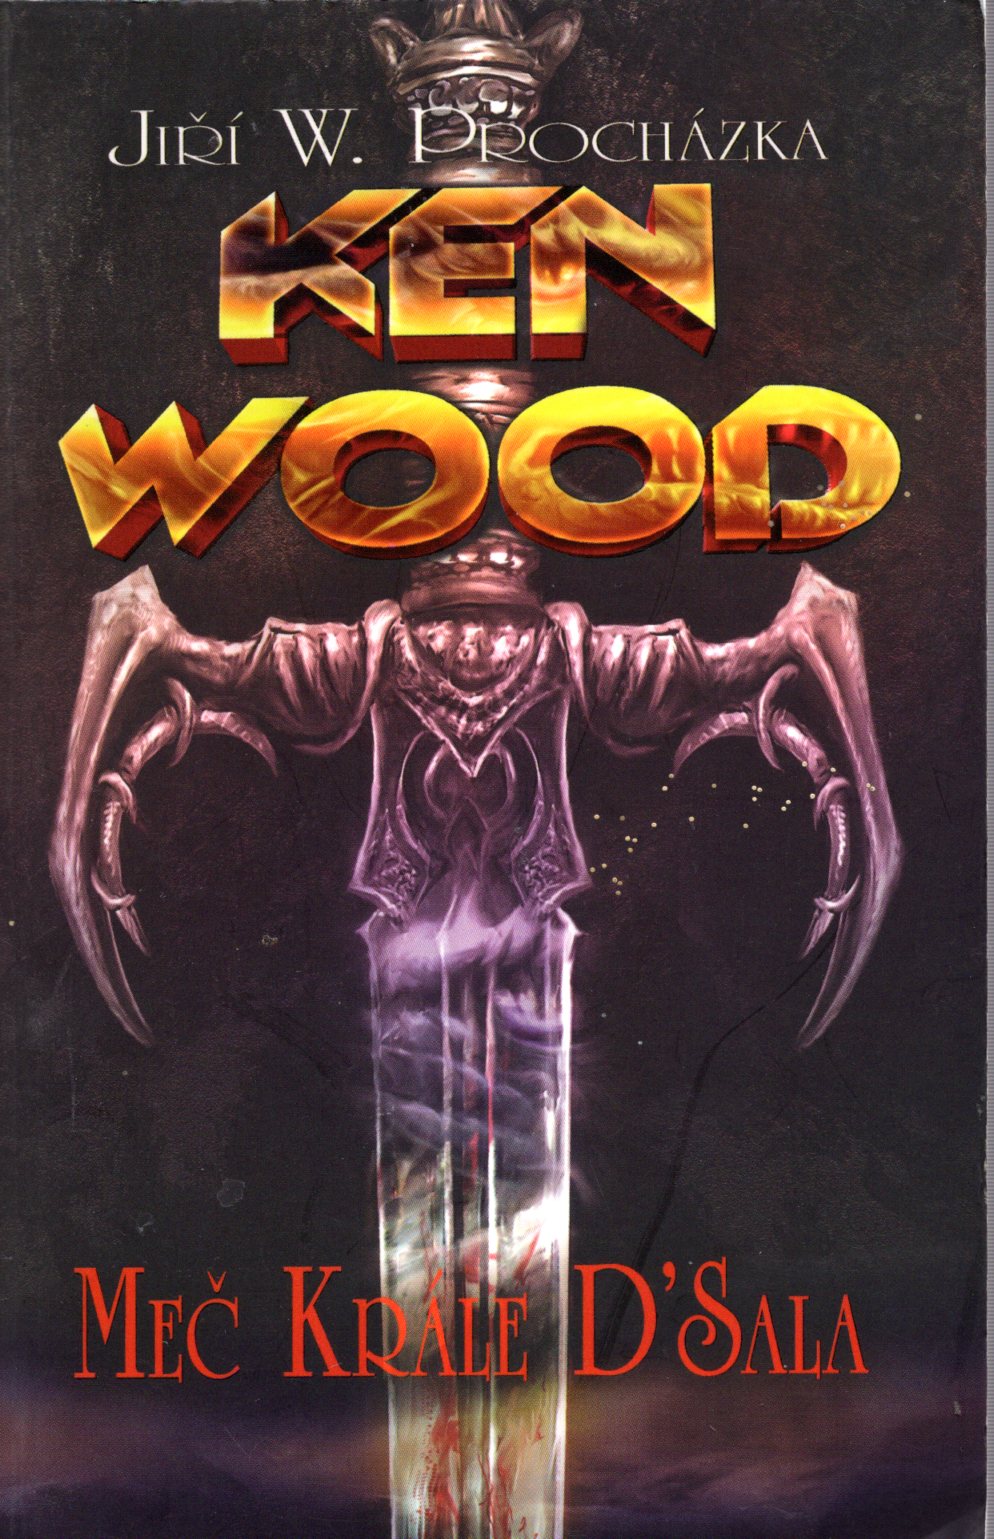 A - Ken Wood: Meč krále D'Sala [Procházka Jiří W.]